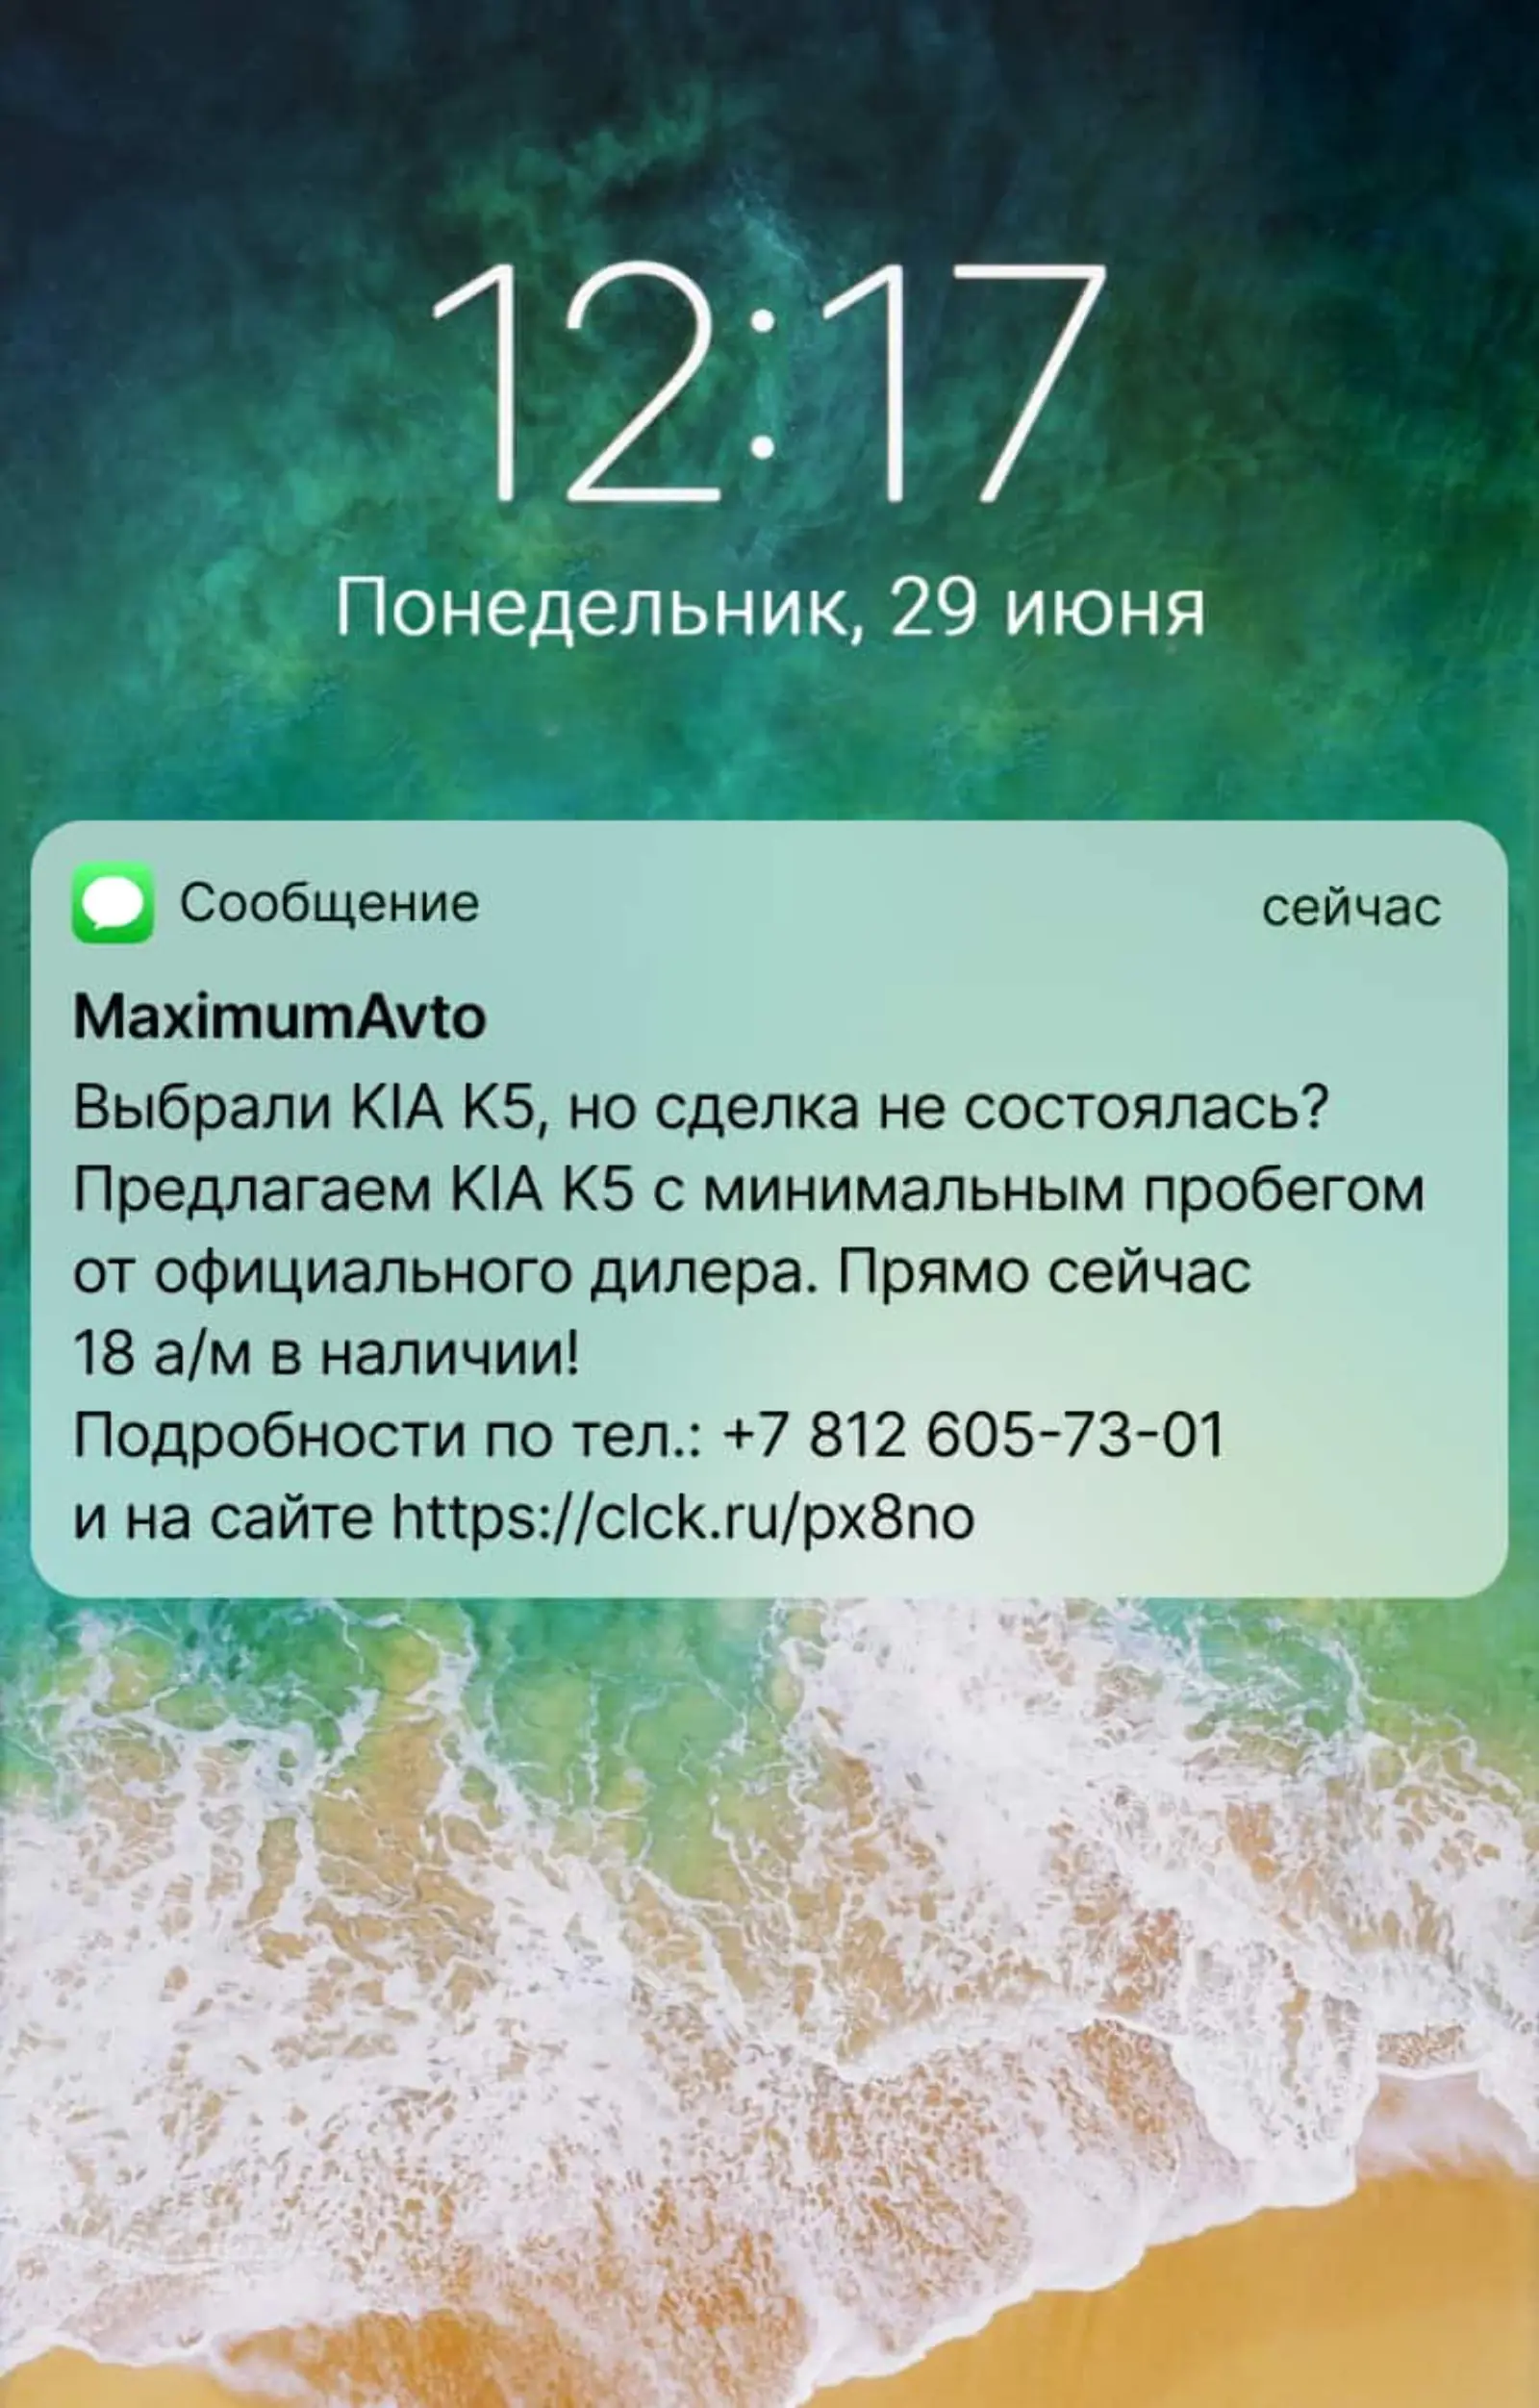 Автохолдинг «Максимум» отправляет SMS всем, кто посетил автоцентр, но не оформил сделку